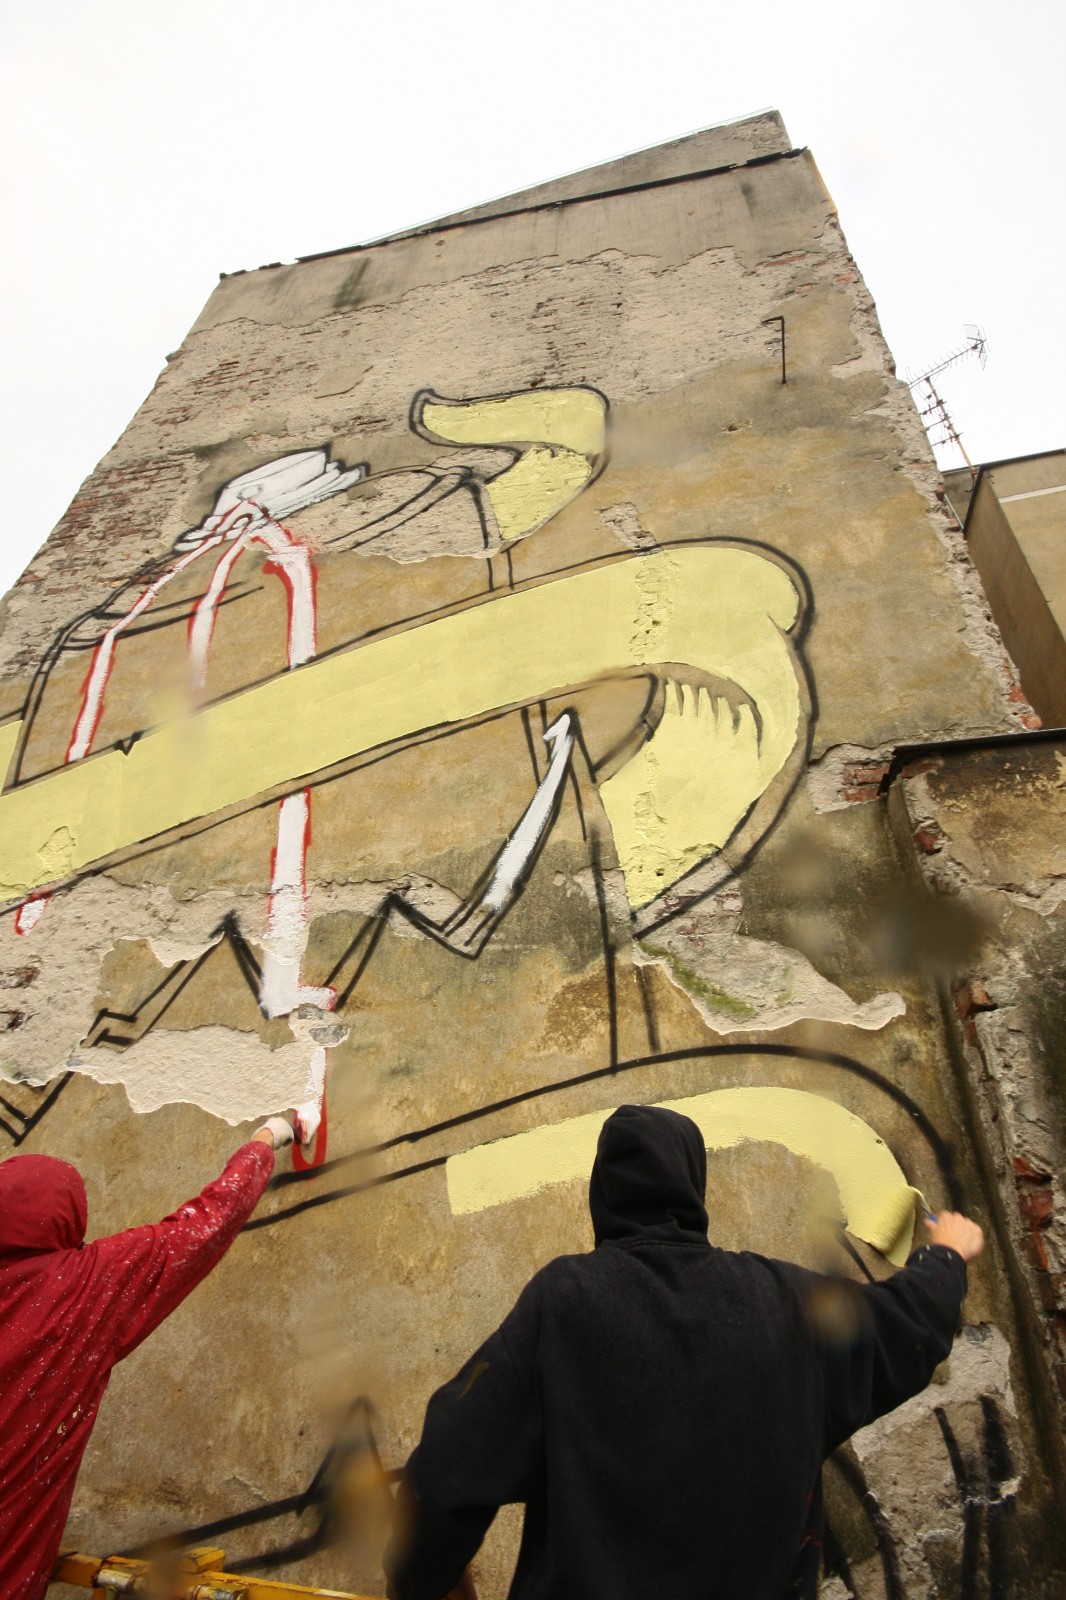 Graffiti gemalt in Warschau Vandalism in progress | Vandalism In Progress | Backstage